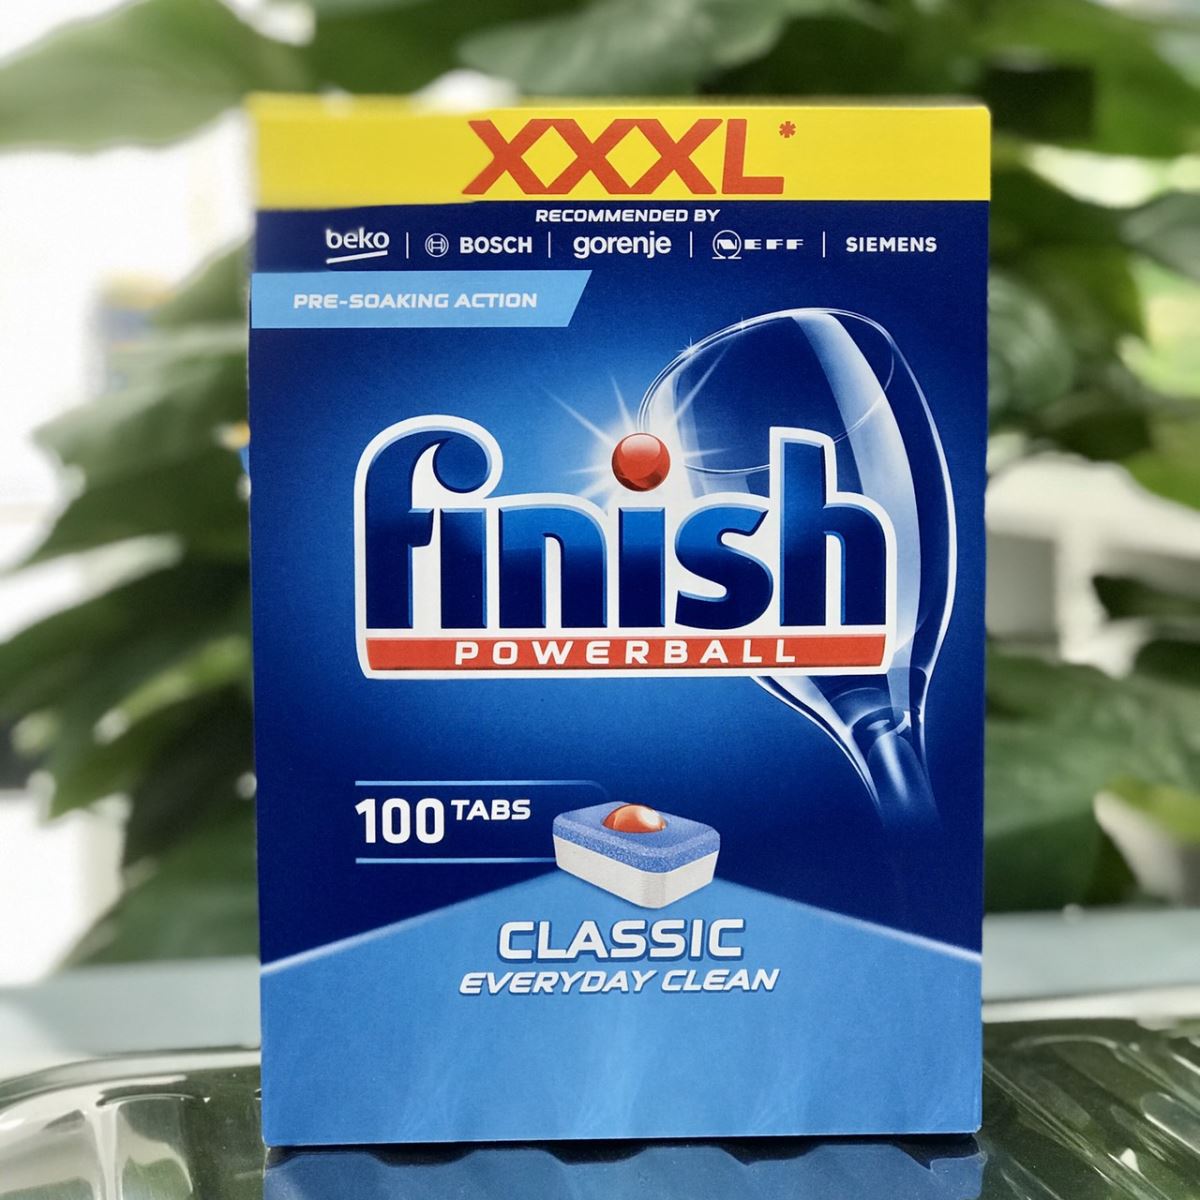 Viên rửa Chén Tổng Hợp Finish 100 Tabs classic Dùng Cho Máy Rửa Bát